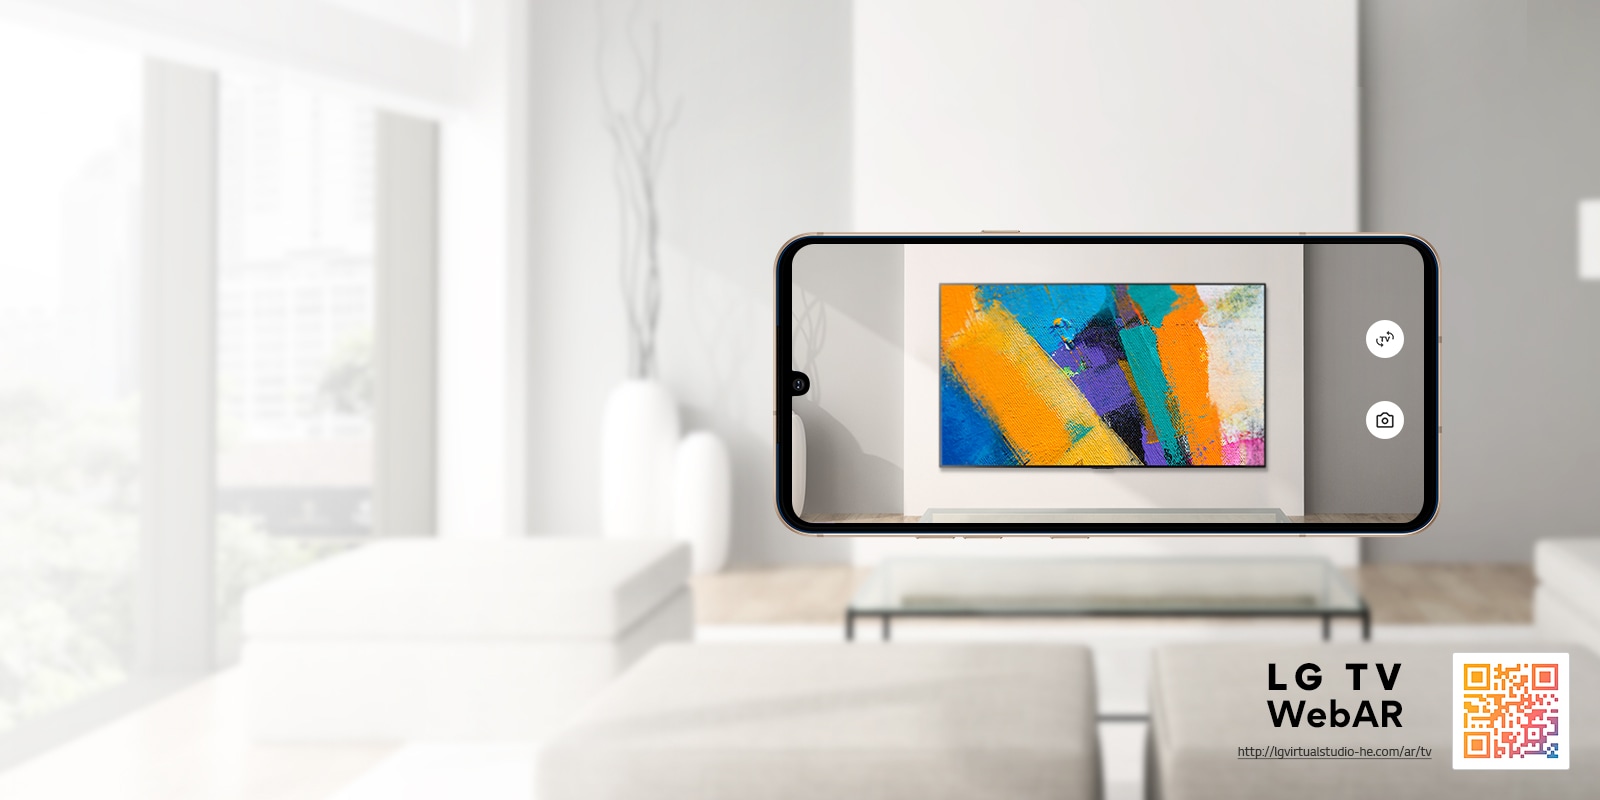 Це веб-симуляція доповненої реальності із зображенням OLED-телевізора LG.  Зображення мобільних телефонів накладаються на мінімалістичний простір.  У правому нижньому куті є QR-код.